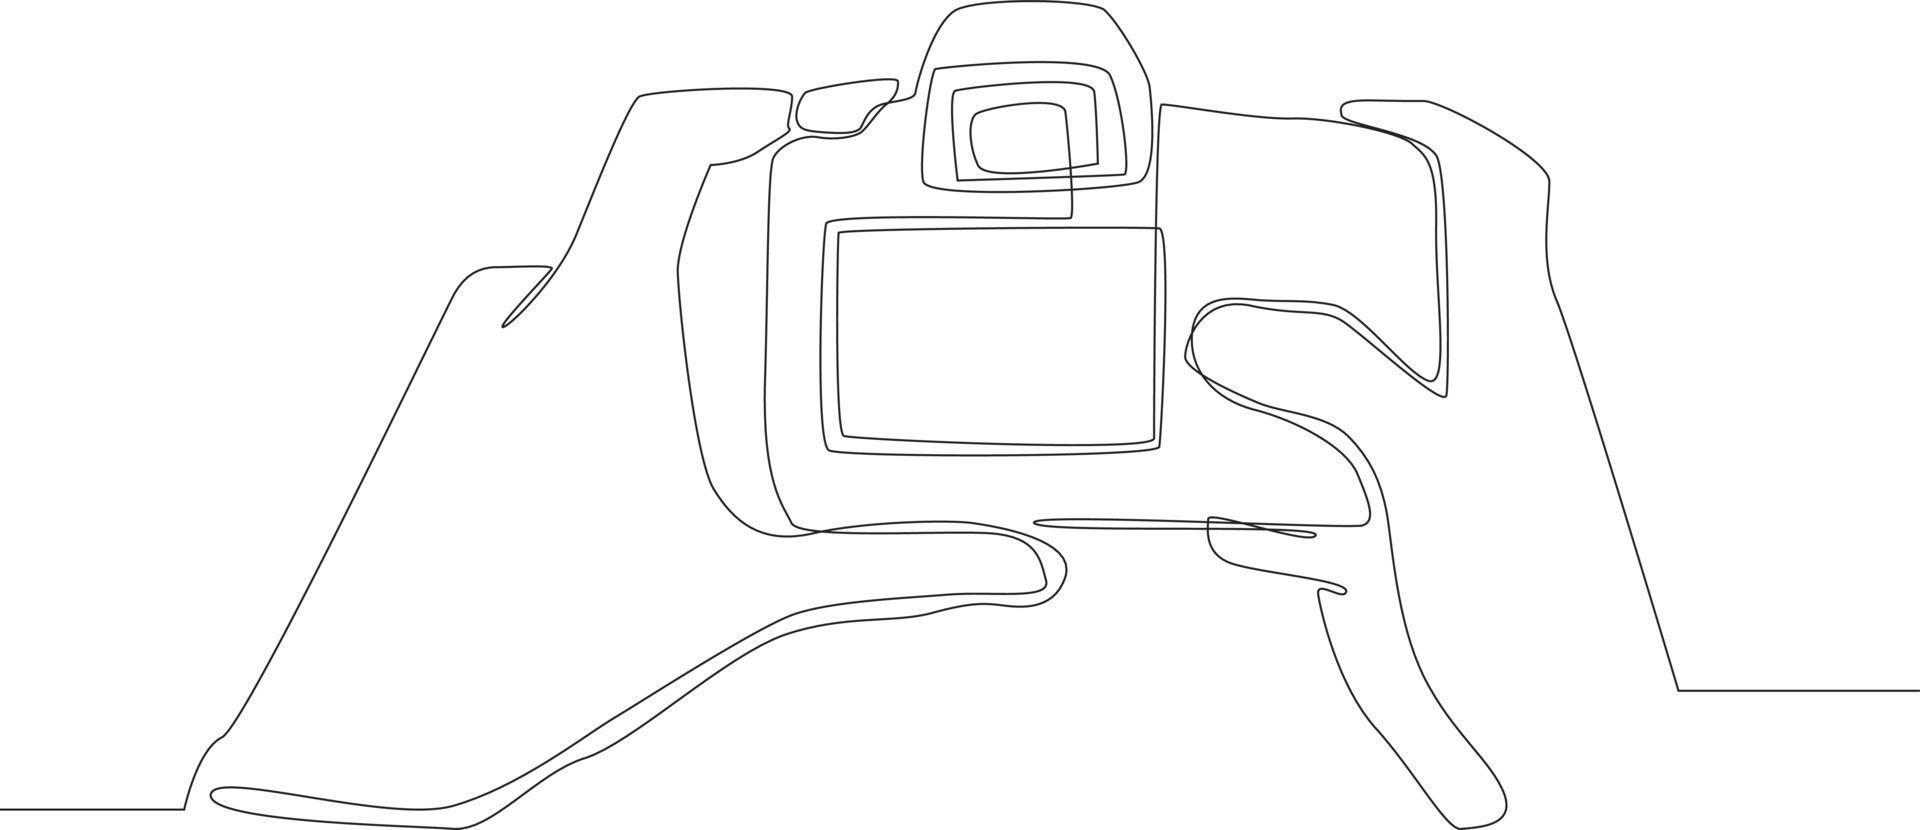 simple ligne continue dessinant les mains de la photographie tenant un appareil photo dslr isolé sur le fond. appareil photo reflex numérique à l'arrière dans la main. scènes du studio. illustration vectorielle. vecteur